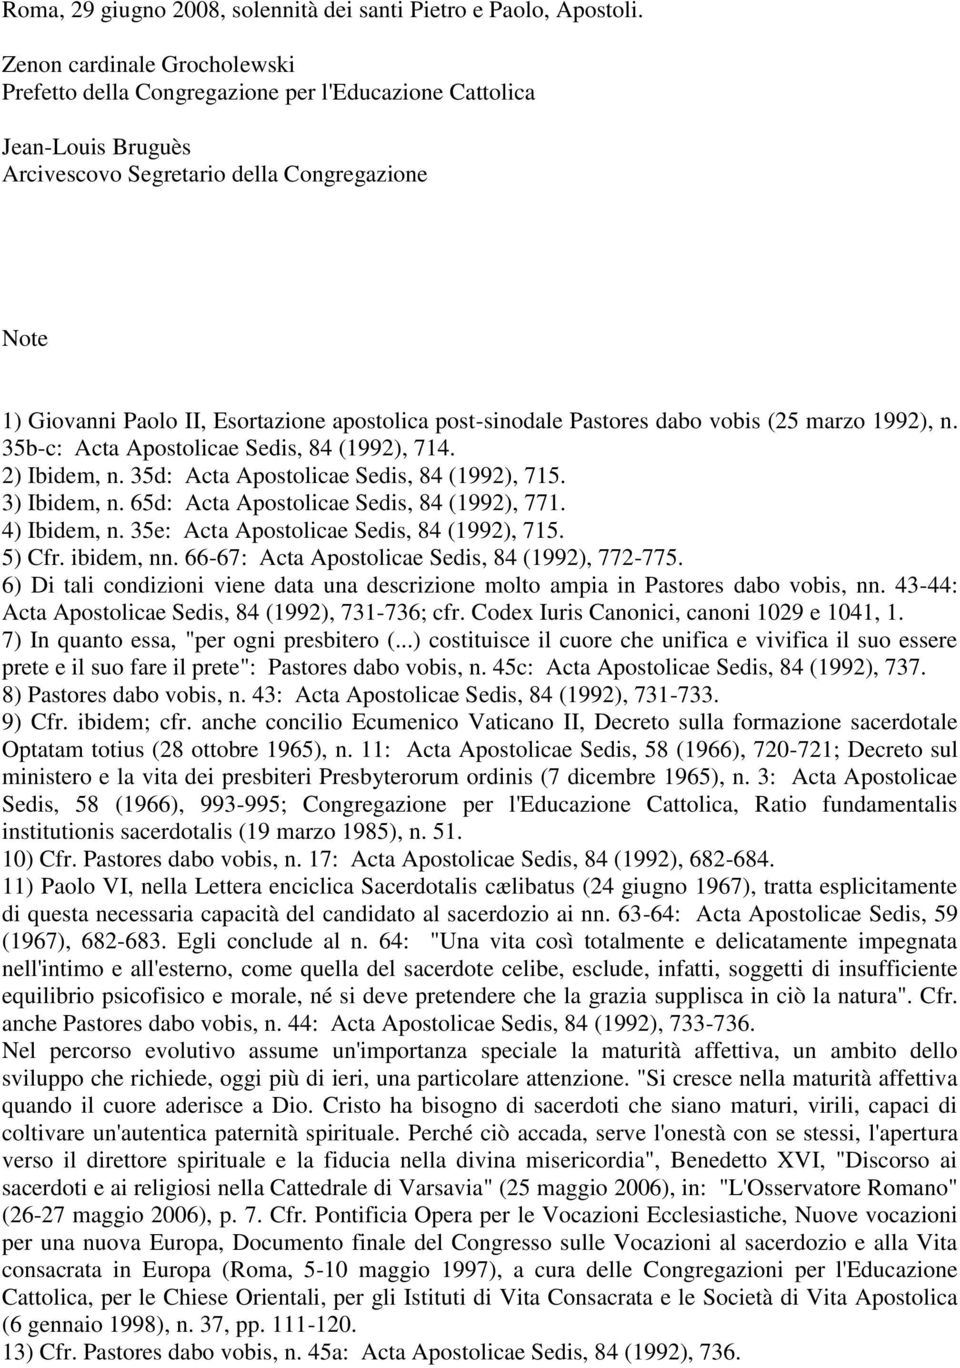 post-sinodale Pastores dabo vobis (25 marzo 1992), n. 35b-c: Acta Apostolicae Sedis, 84 (1992), 714. 2) Ibidem, n. 35d: Acta Apostolicae Sedis, 84 (1992), 715. 3) Ibidem, n.